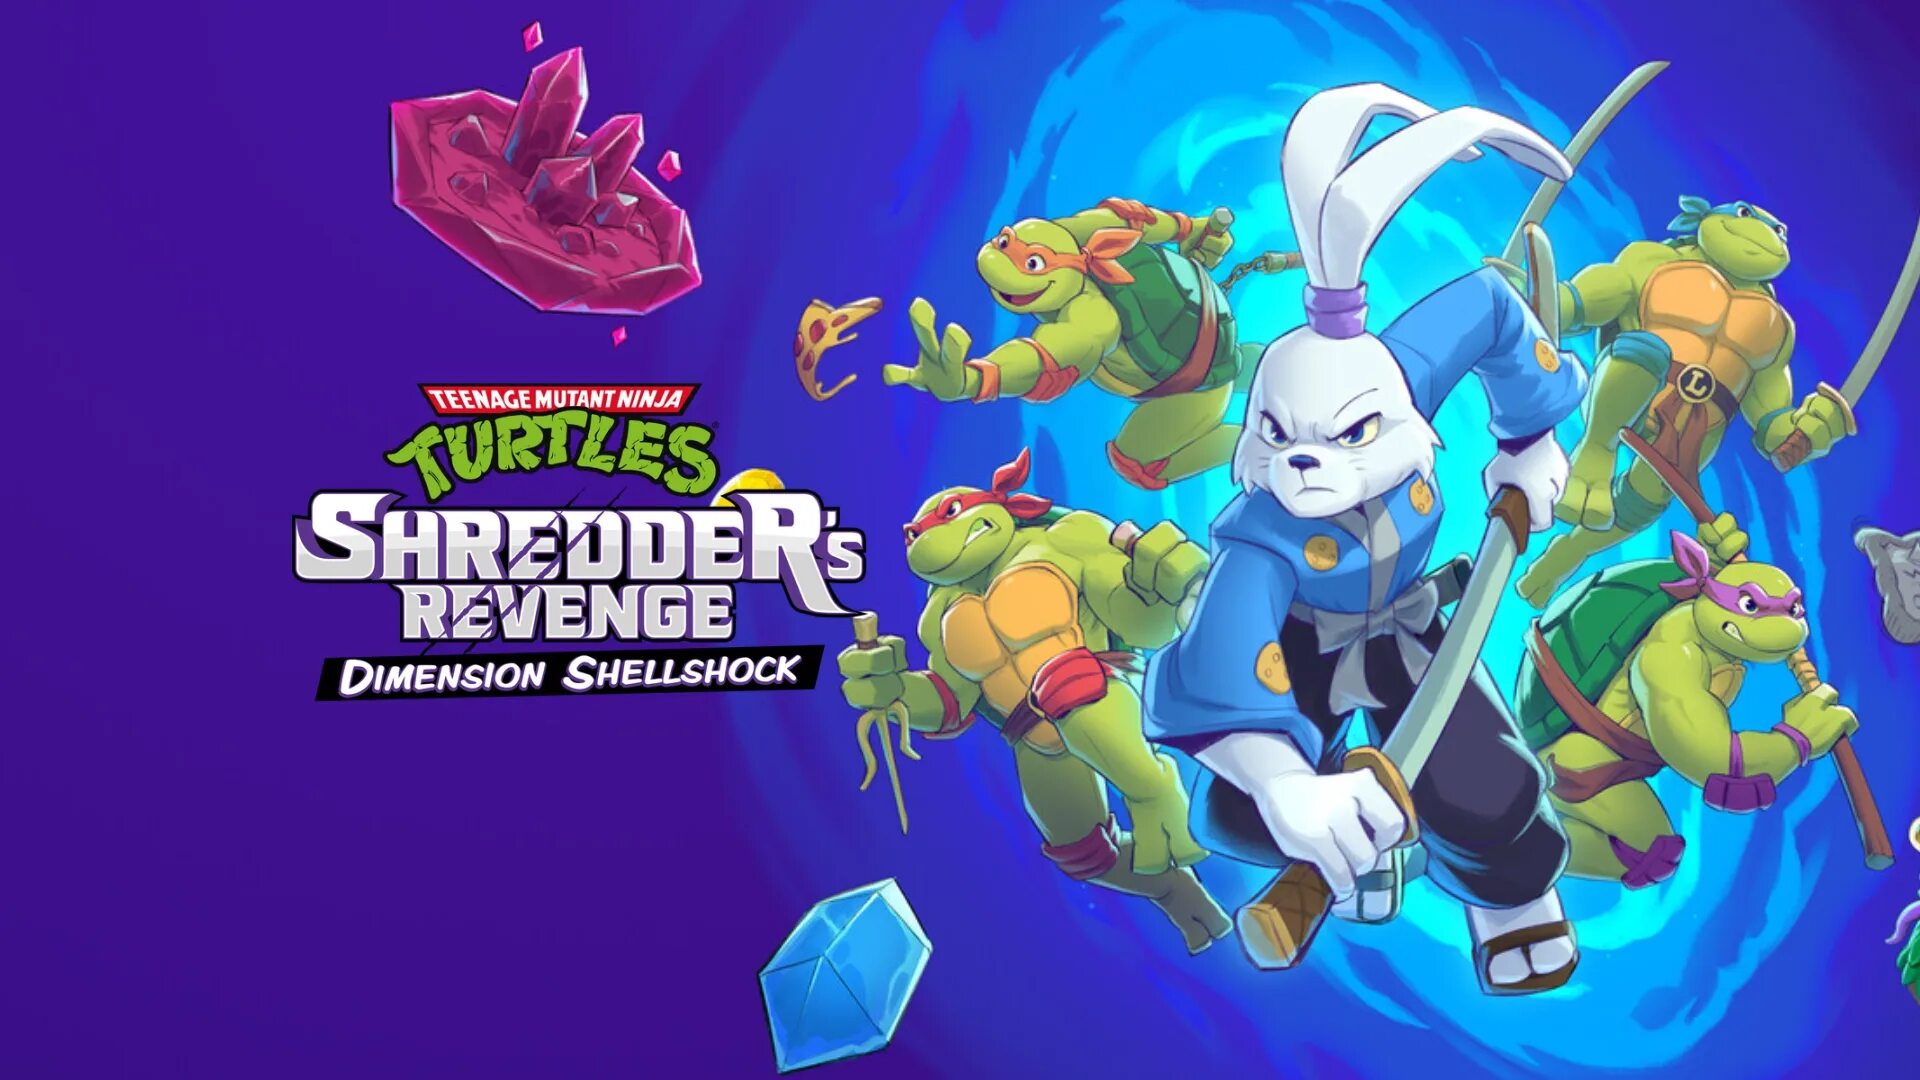 Tmnt shredder android. TMNT Shredder Revenge. TMNT SHEREDERS'S Revenge. Teenage Mutant Ninja Turtles Shredder Revenge DLC. TMNT Shredder Revenge DLC.